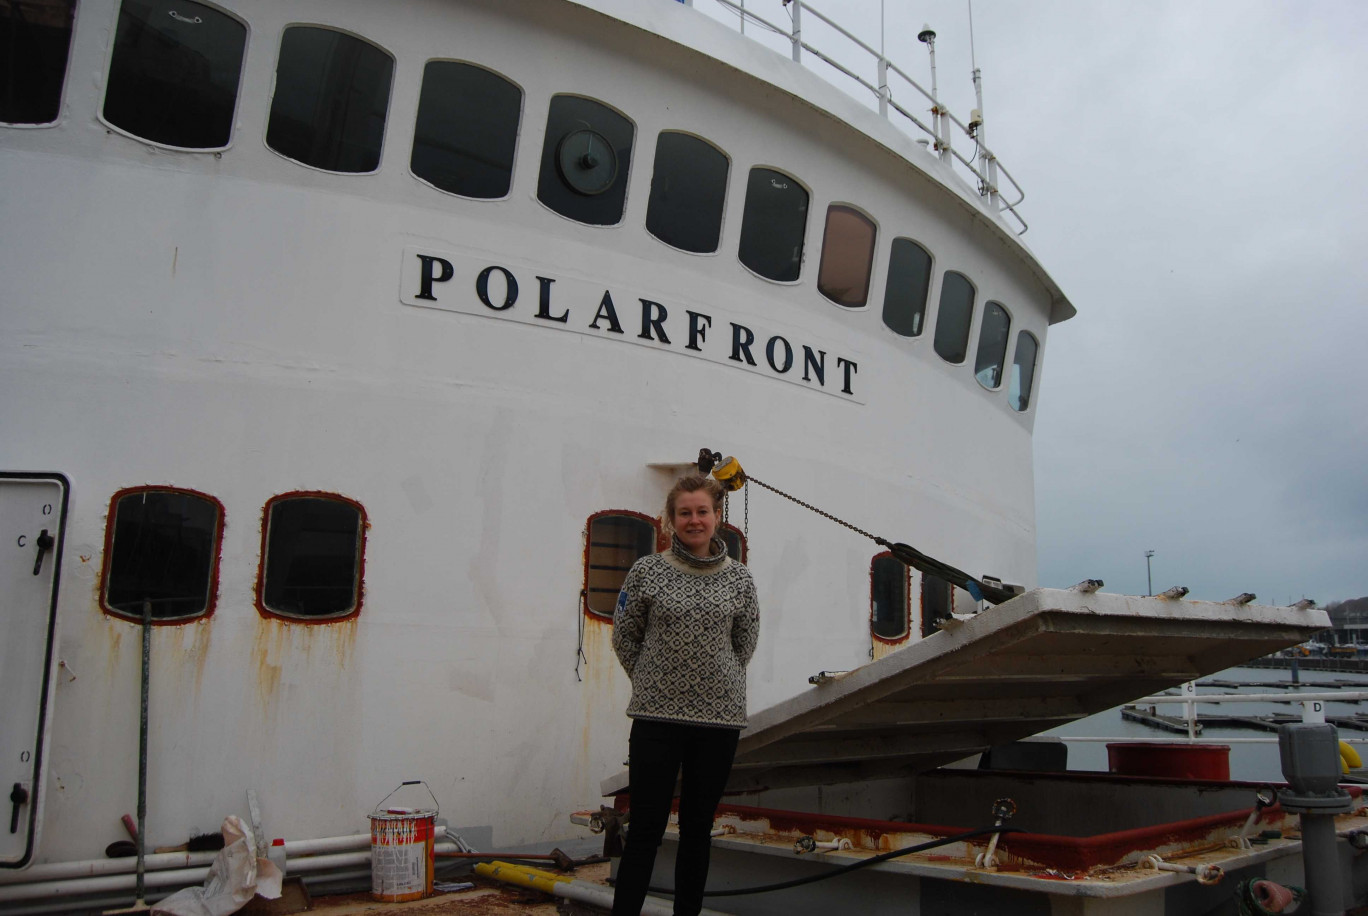 L’armatrice Sophie Galvagnon surveille le chantier au port de Boulogne jusqu’au printemps 2018.

